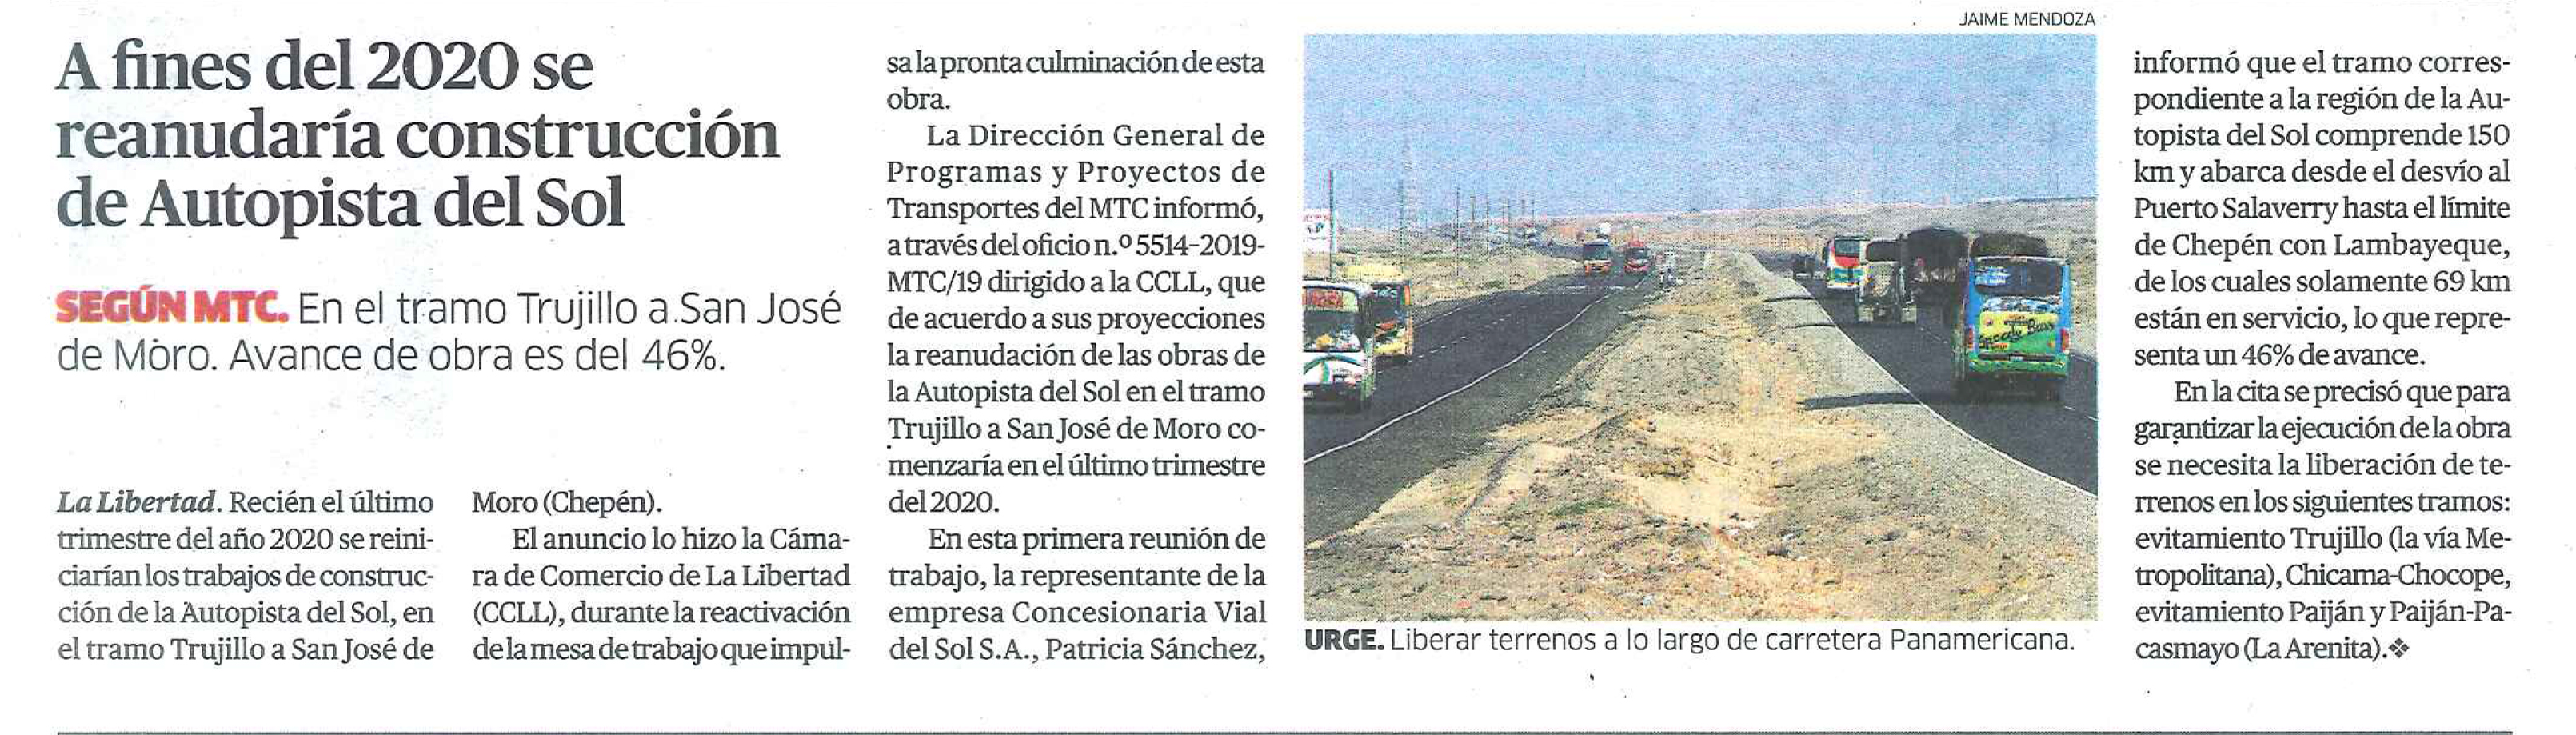 12.11.19.22 LA REPÚBLICA reanudarán Trabajos Autopista del Sol